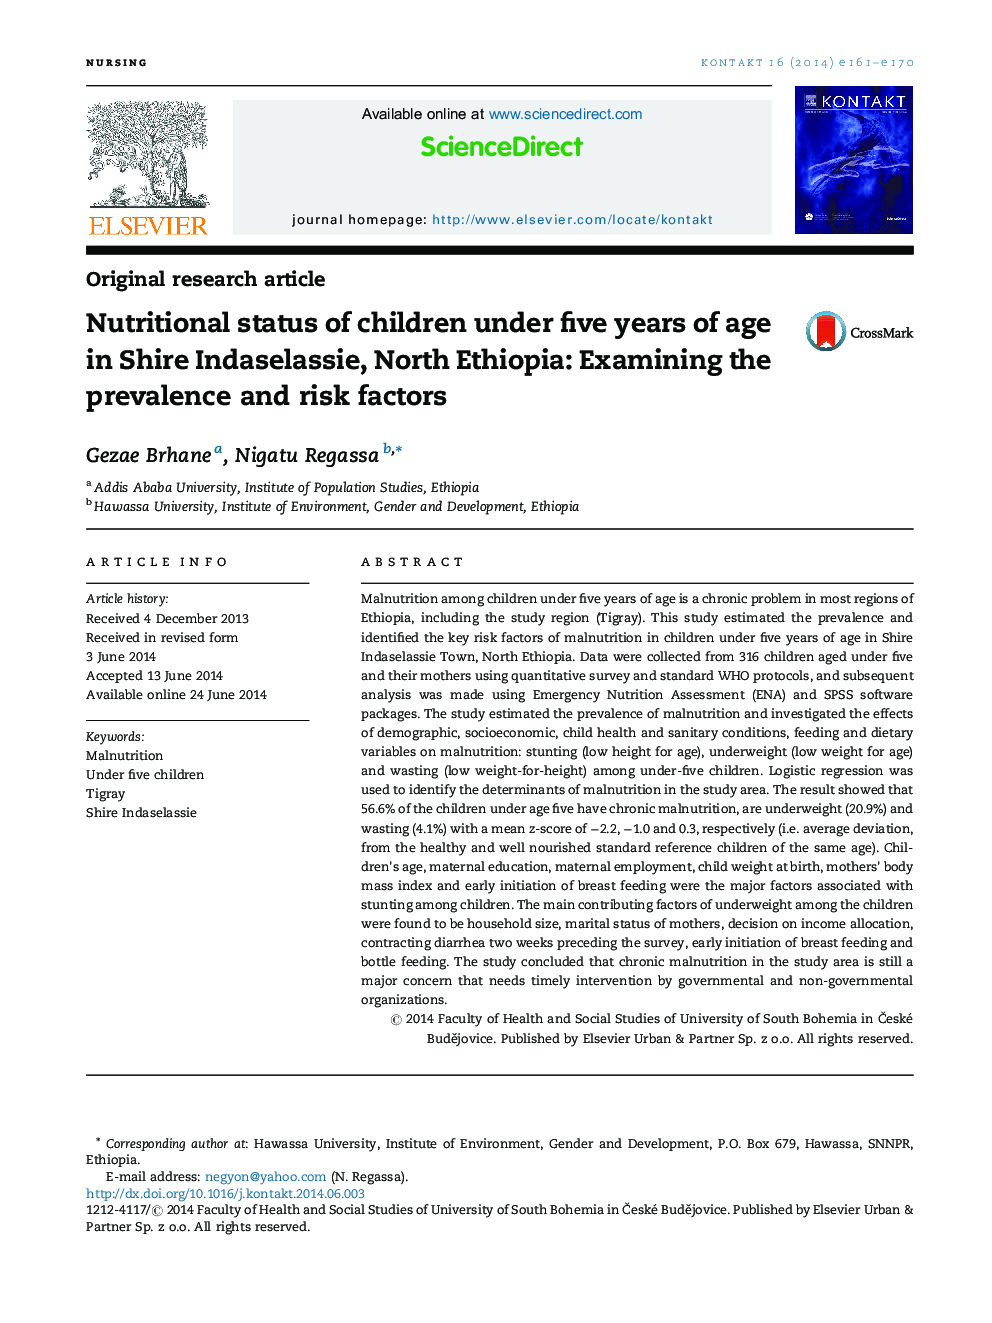 وضعیت تغذیه کودکان زیر 5 سال در Shire Indaselassie، Ethiopia شمالی: بررسی شيوع و عوامل خطر